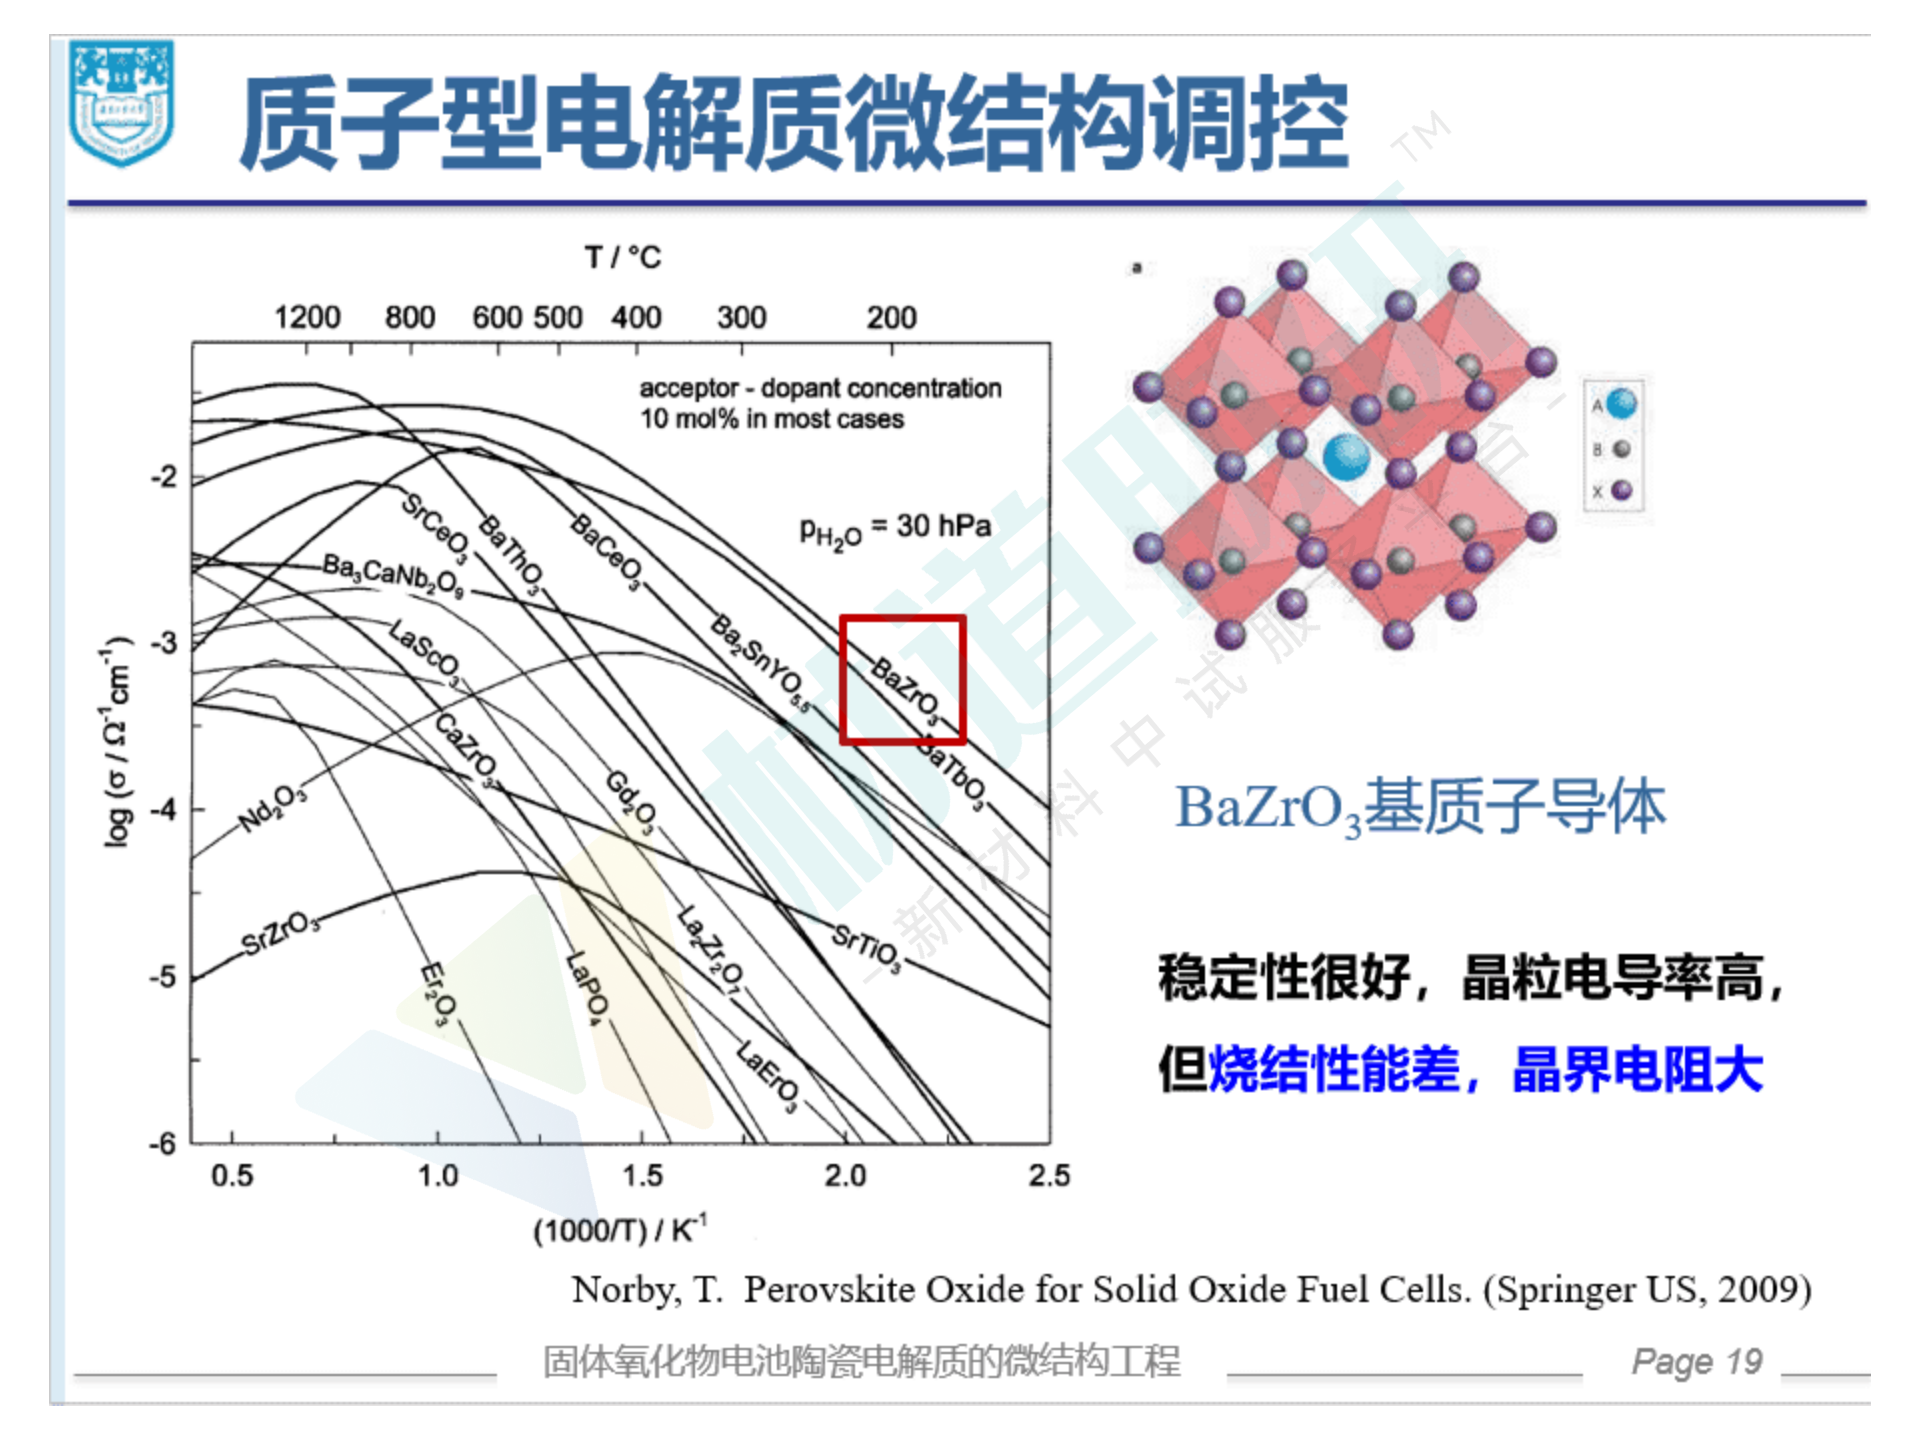 葛林-固体氧化物电池陶瓷电解质的微结构工程（分享版）_19.png